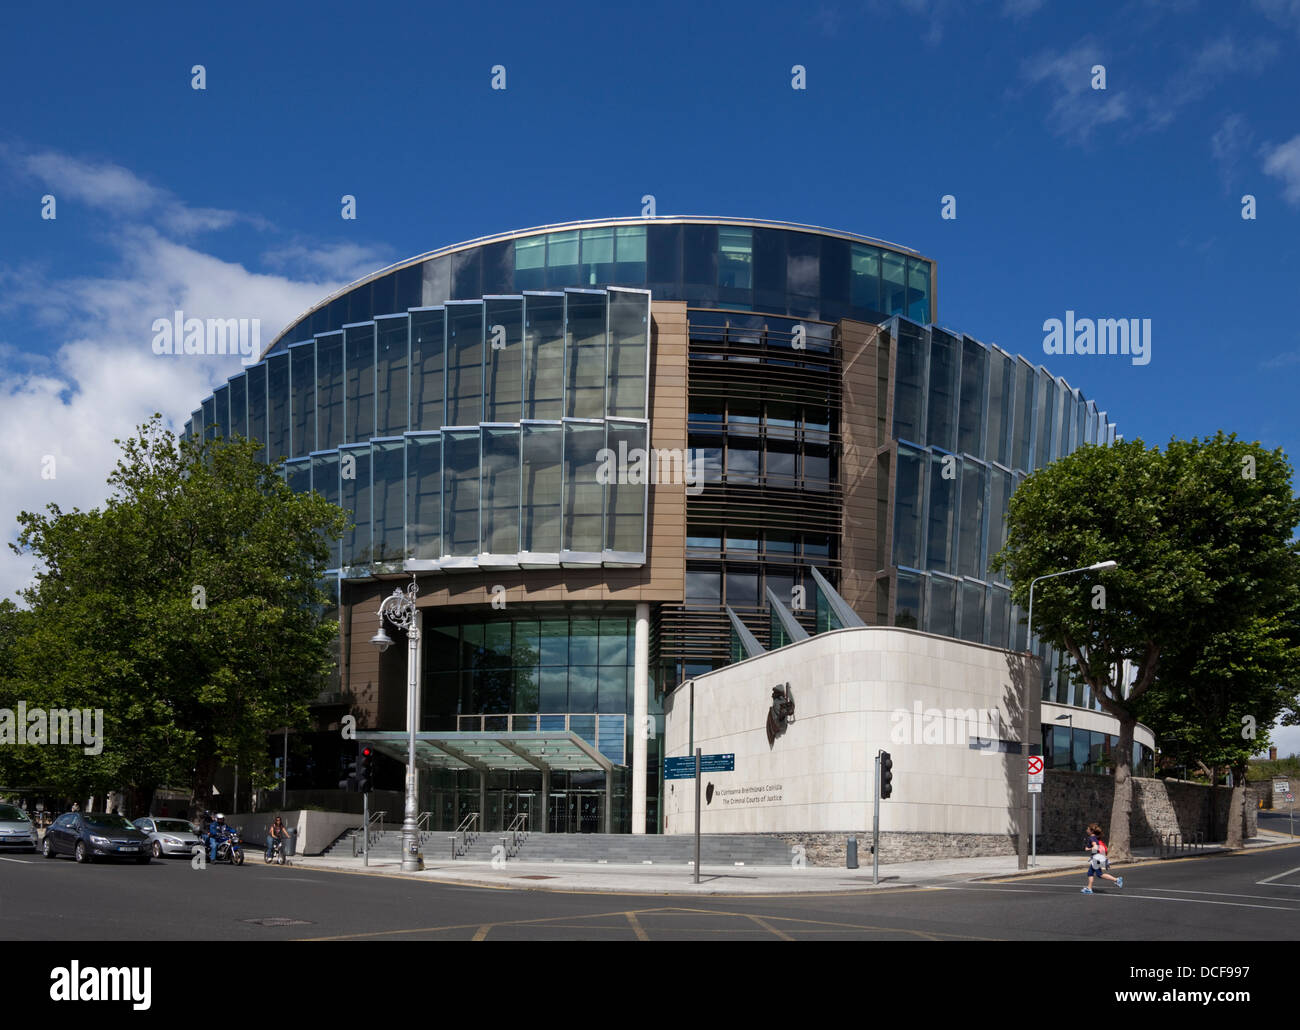 Les juridictions pénales de la Justice, la cour principale,Parkgate Street, près de le Phoenix Park, Dublin, Irlande Banque D'Images